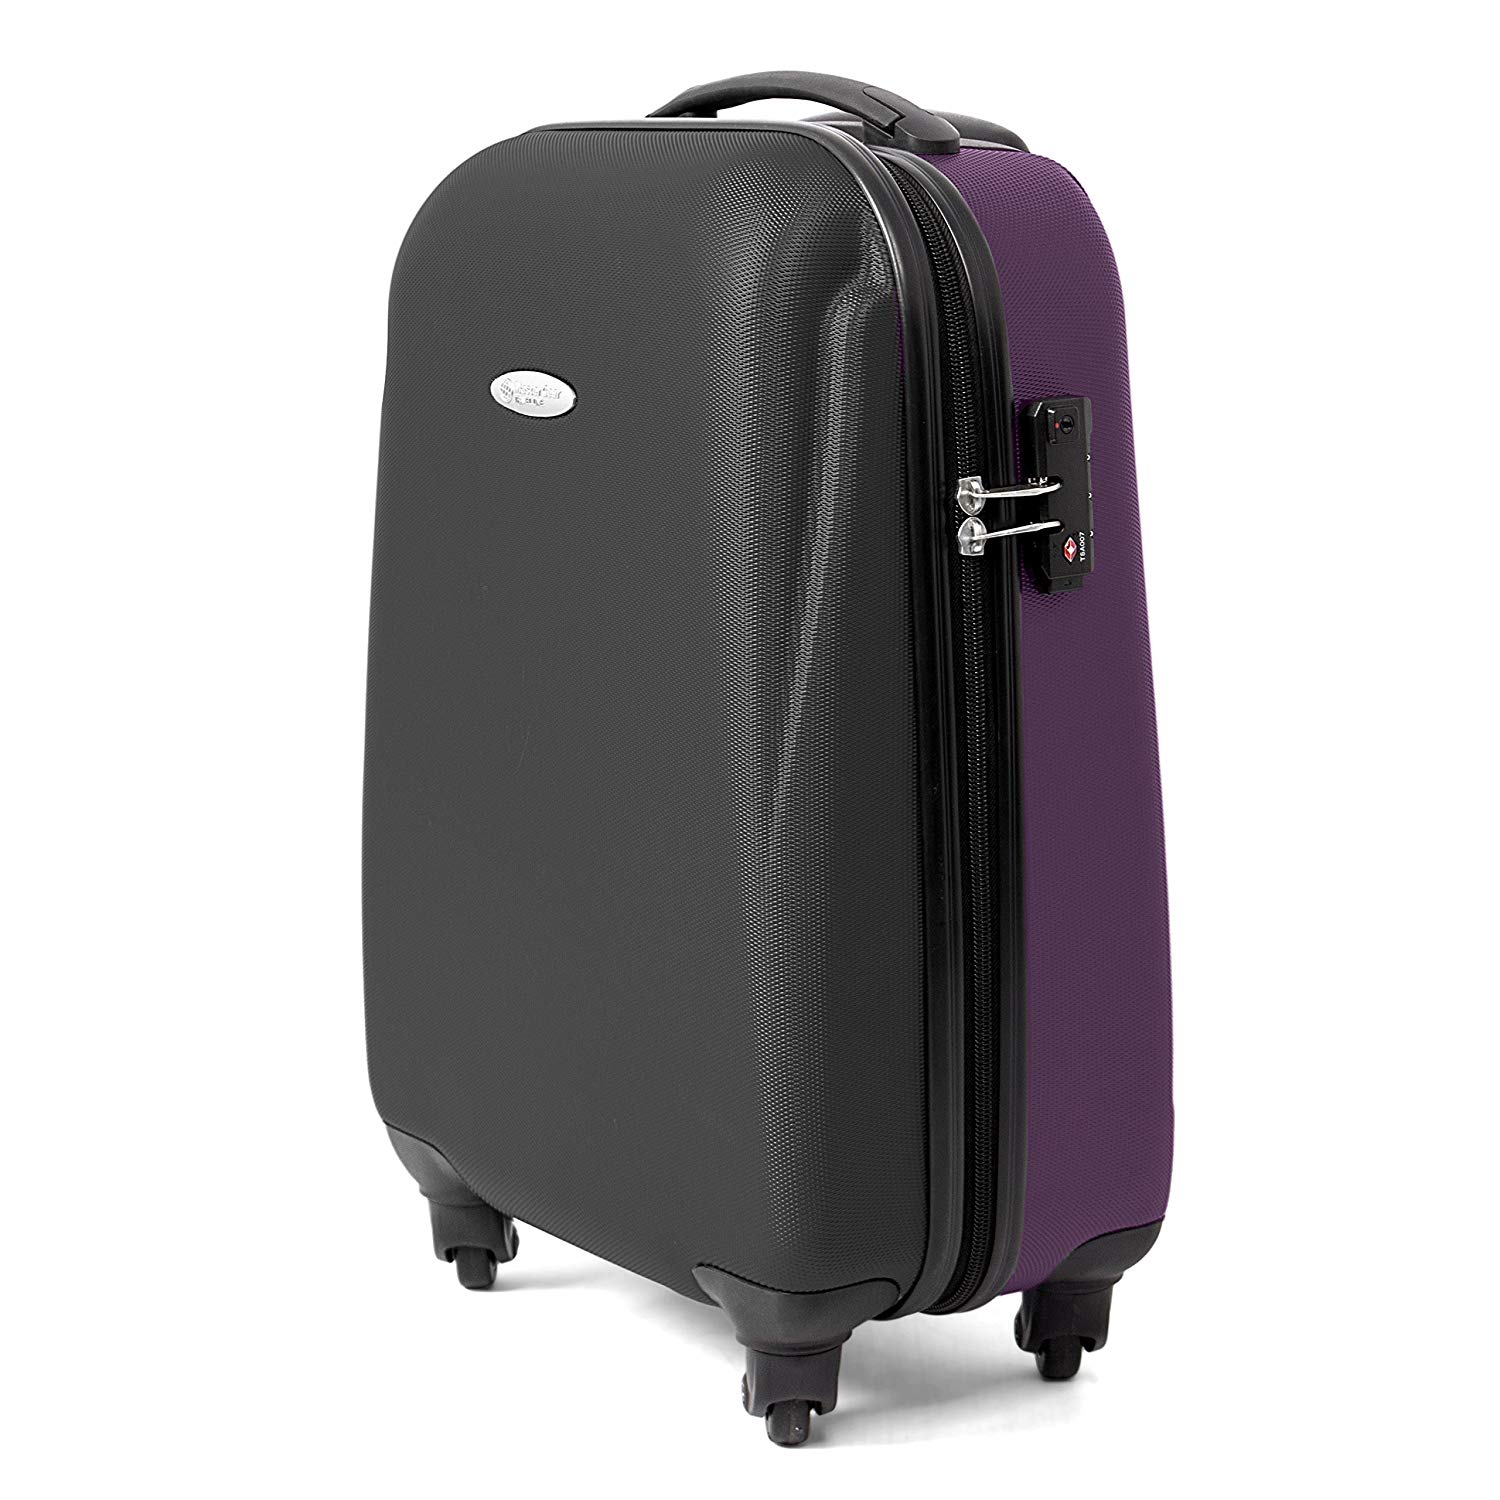 MasterGear Handgepäck Koffer aus ABS mit Reißverschluss in schwarz / violett , 4 Rollen (360 Grad) , Trolley, Reisekoffer, Hartschalenkoffer, TSA Schloss , für zahlreiche Fluggesellschaften geeignet